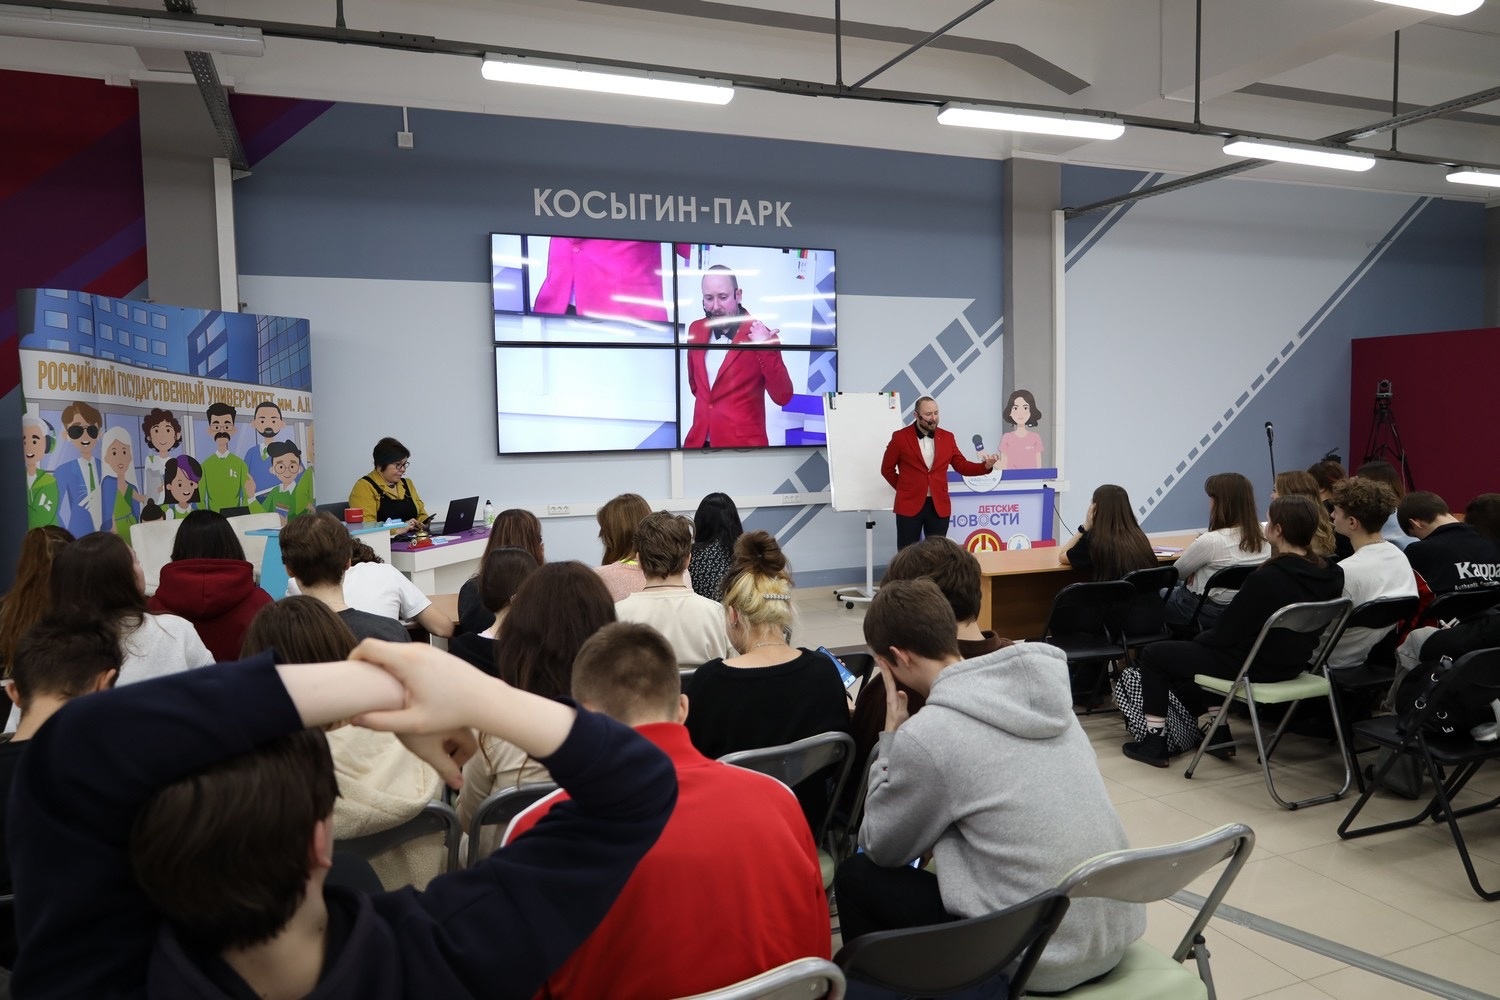 Практикум для школьников прошел в РГУ имени Алексея Косыгина. Фото: страница учреждения в соцсетях